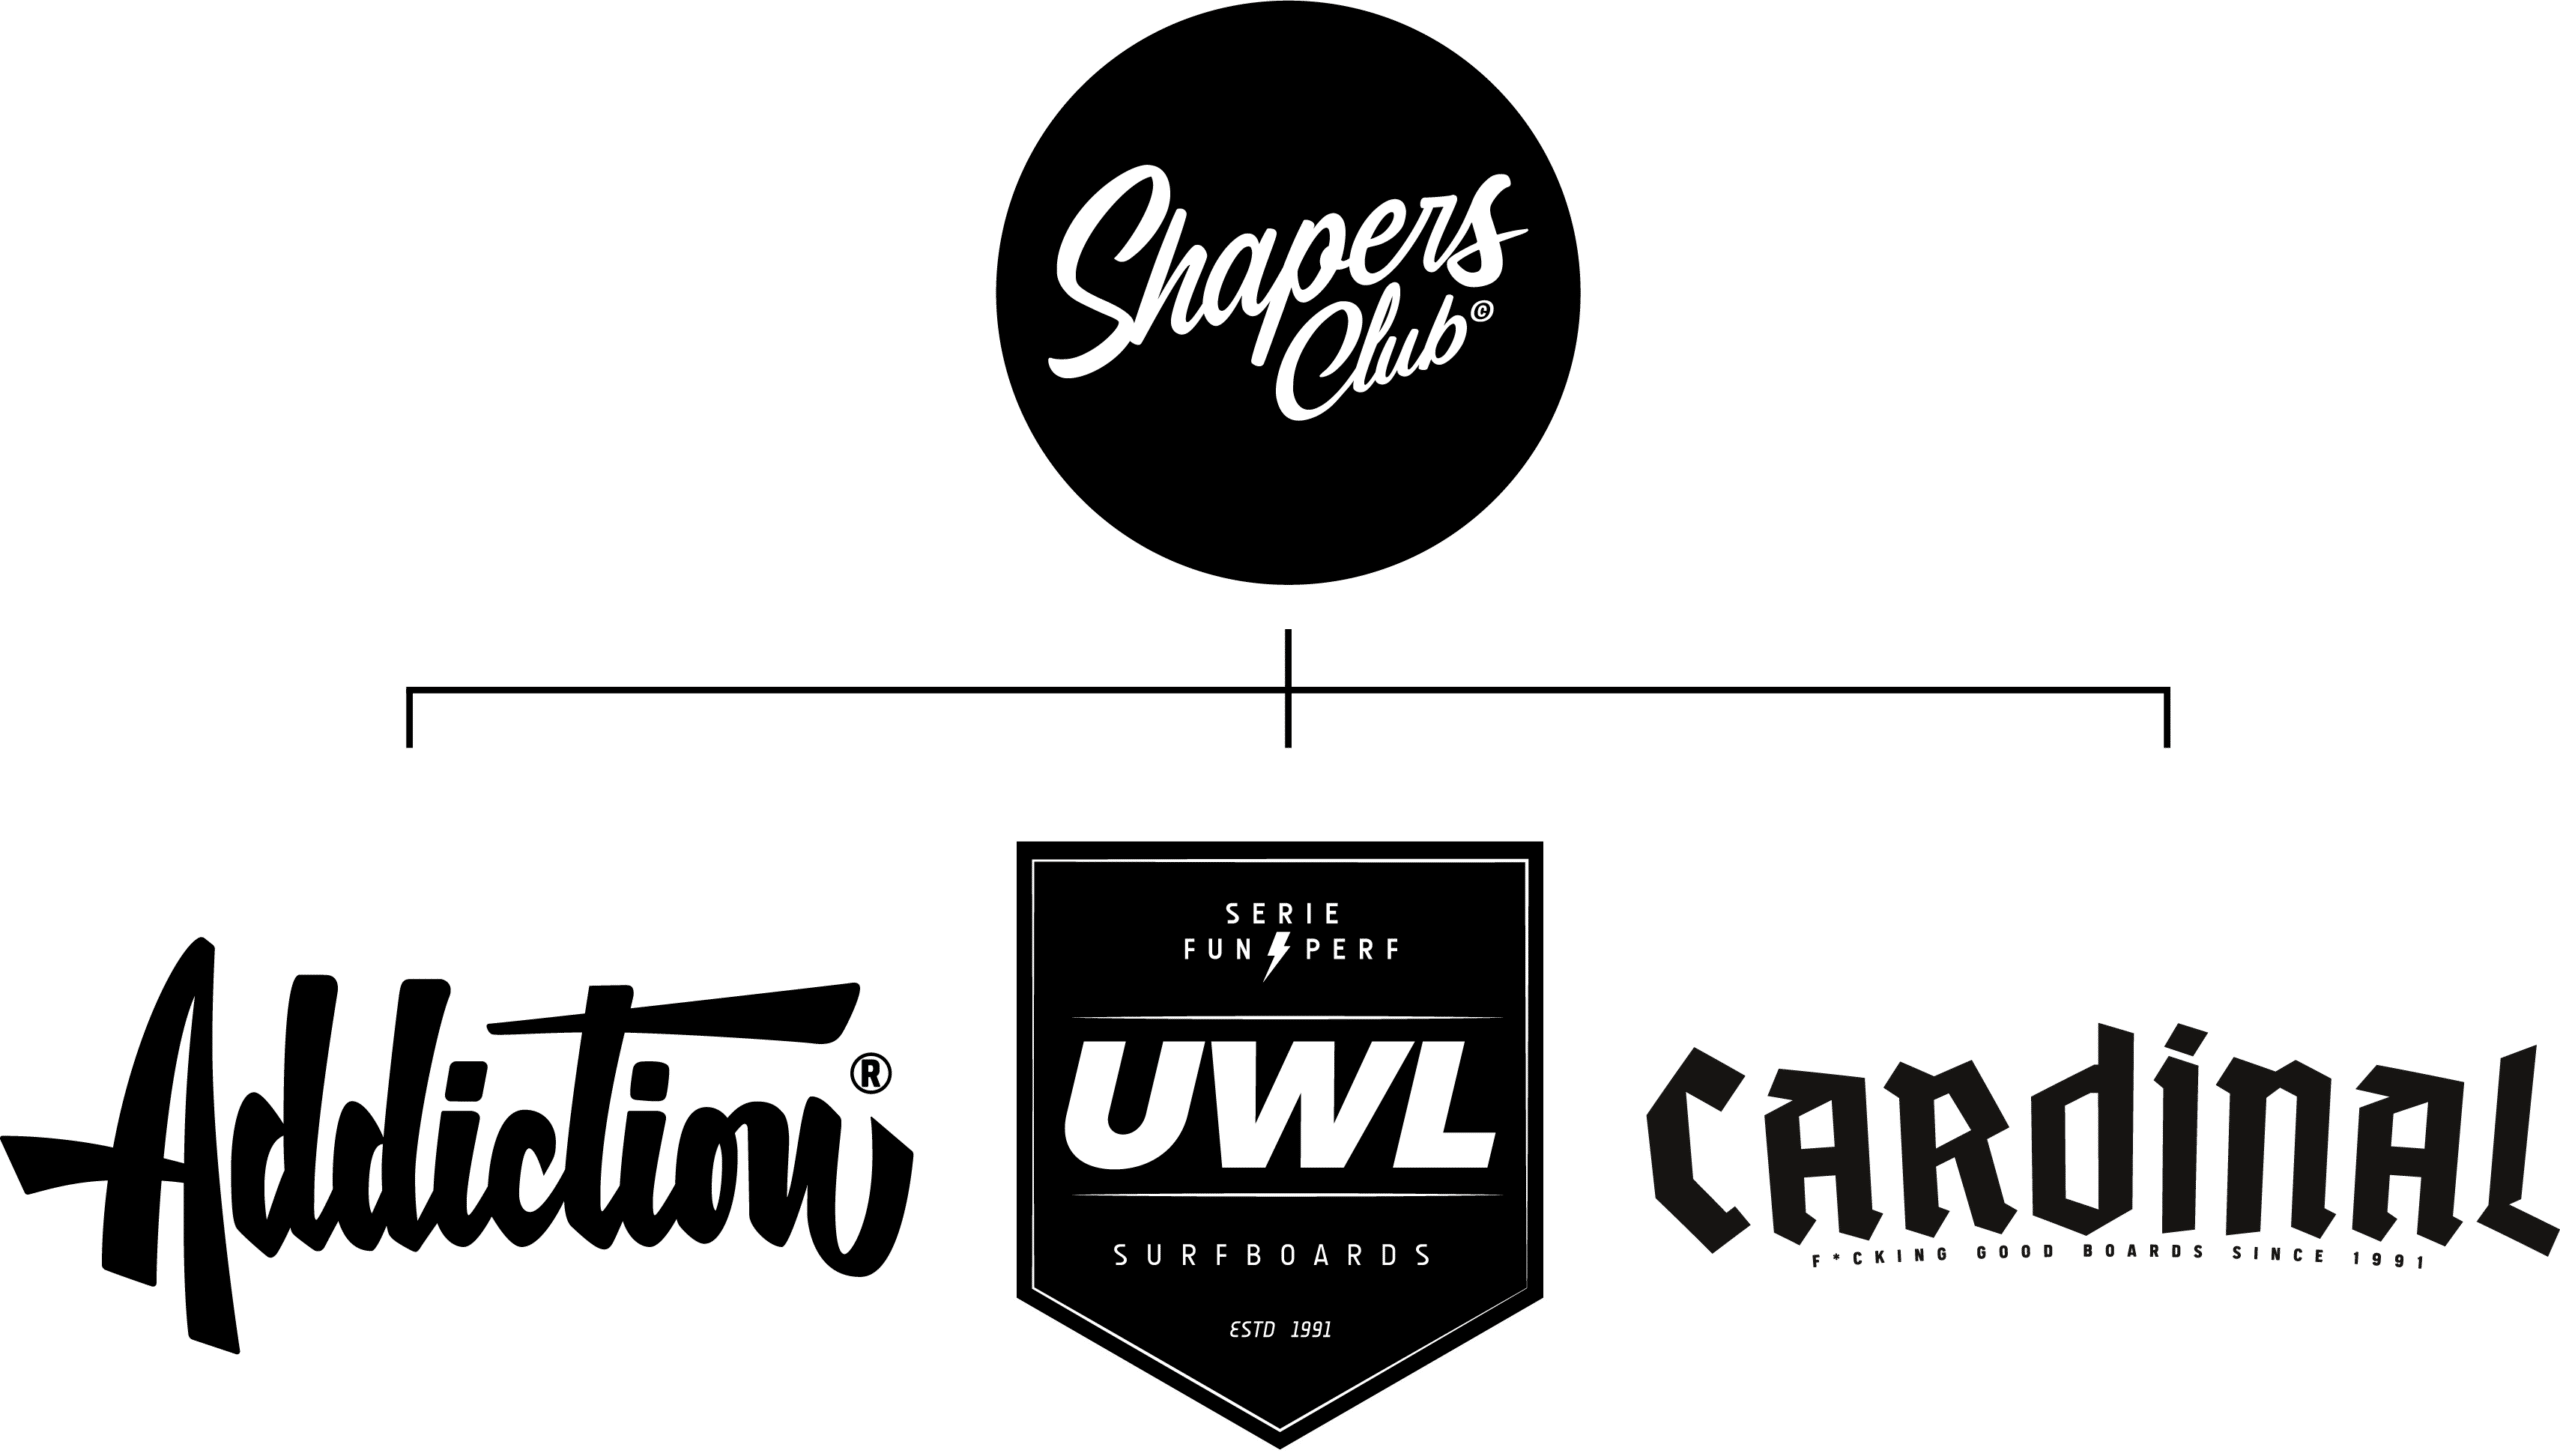 Shapers-Club- Une compilation de divers logos en noir et blanc liés aux marques de surf. -surfshop-surfboard